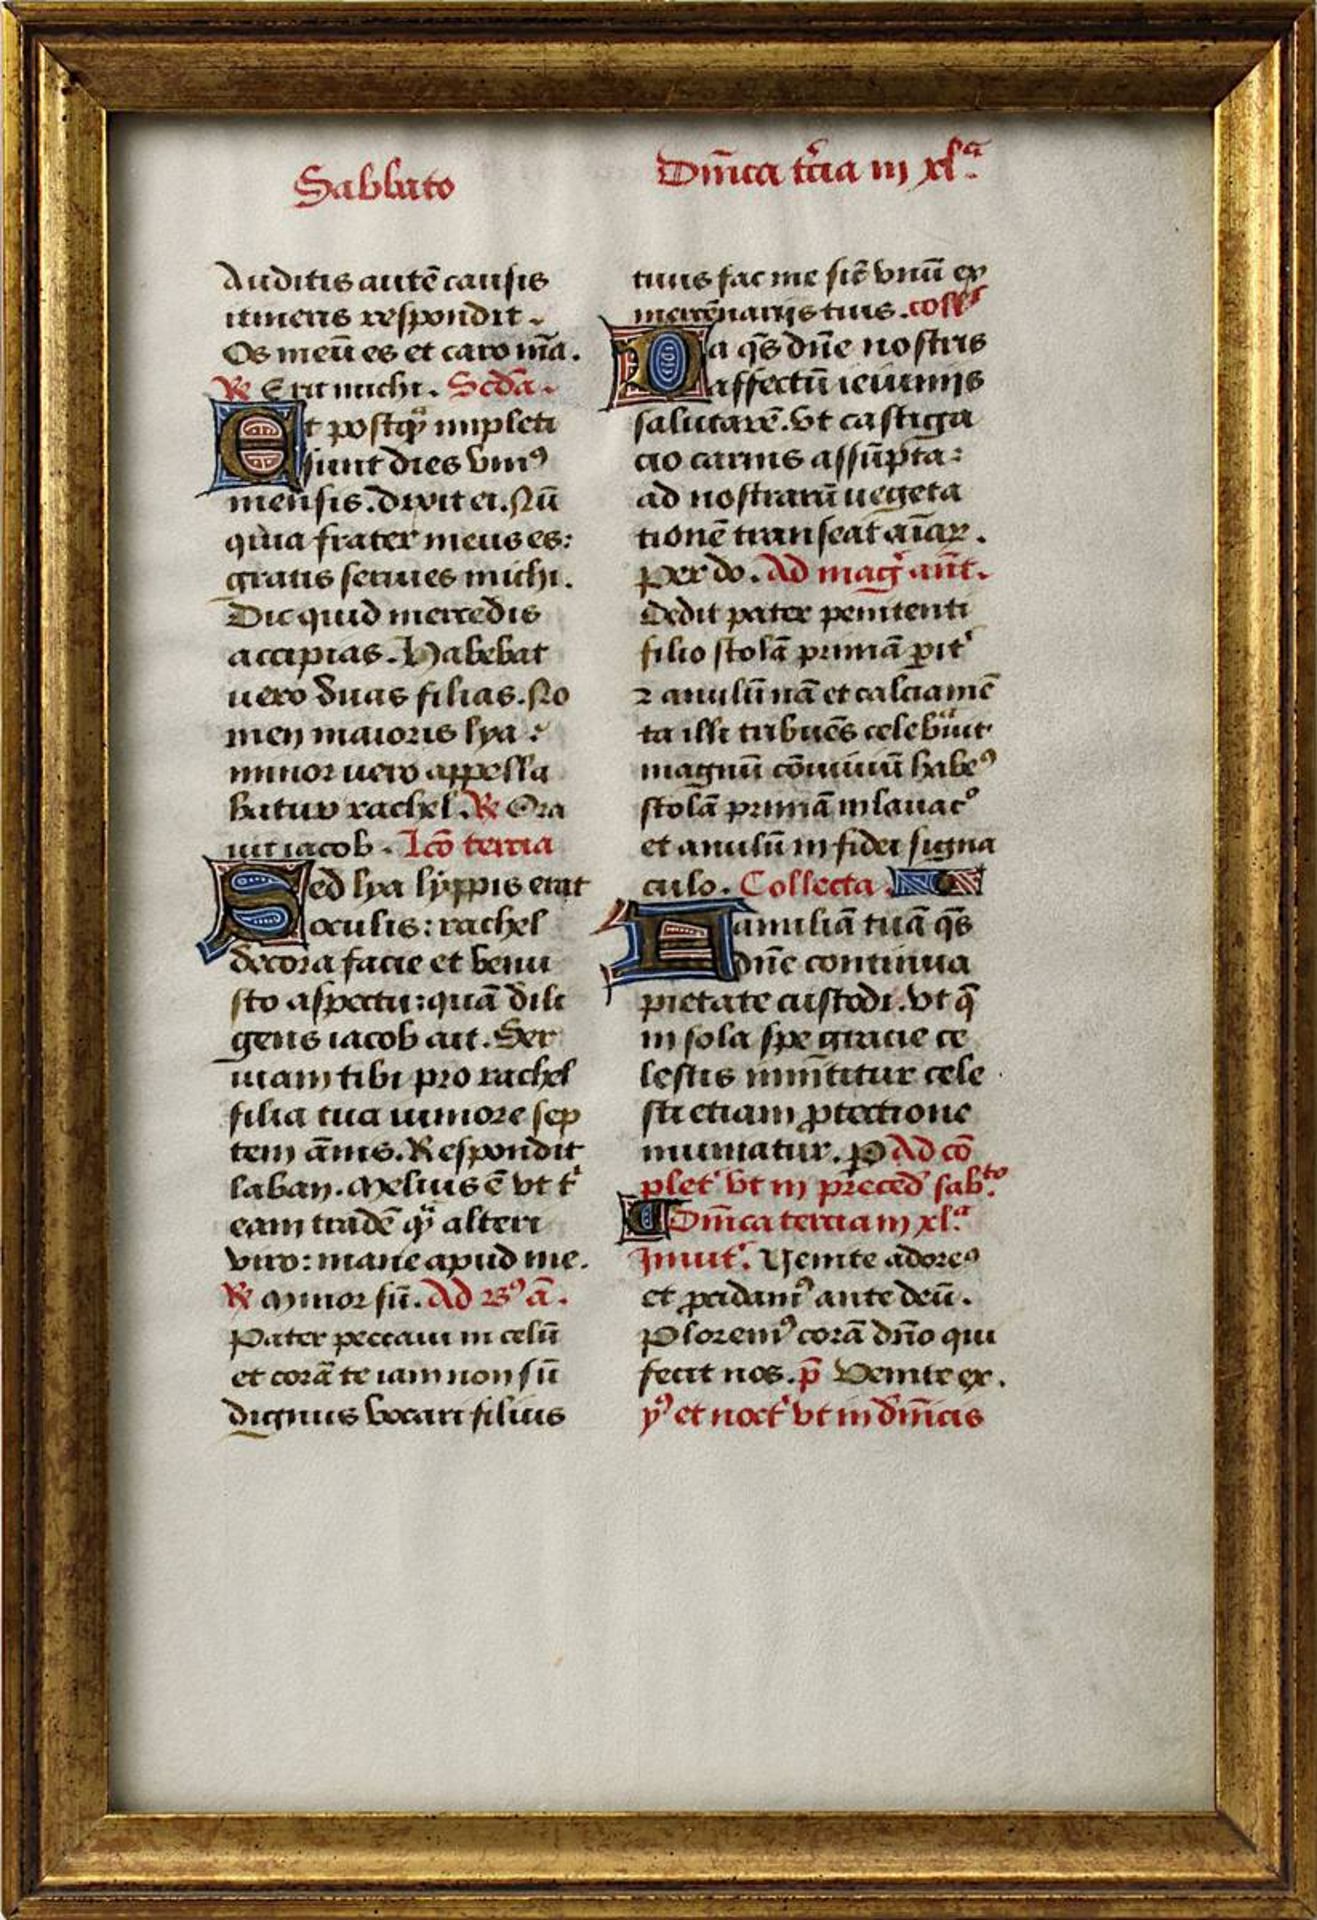 Pergamentseite, wohl aus einem Breviarium des 16. Jh., in lateinischer Sprache, mit verzierten und